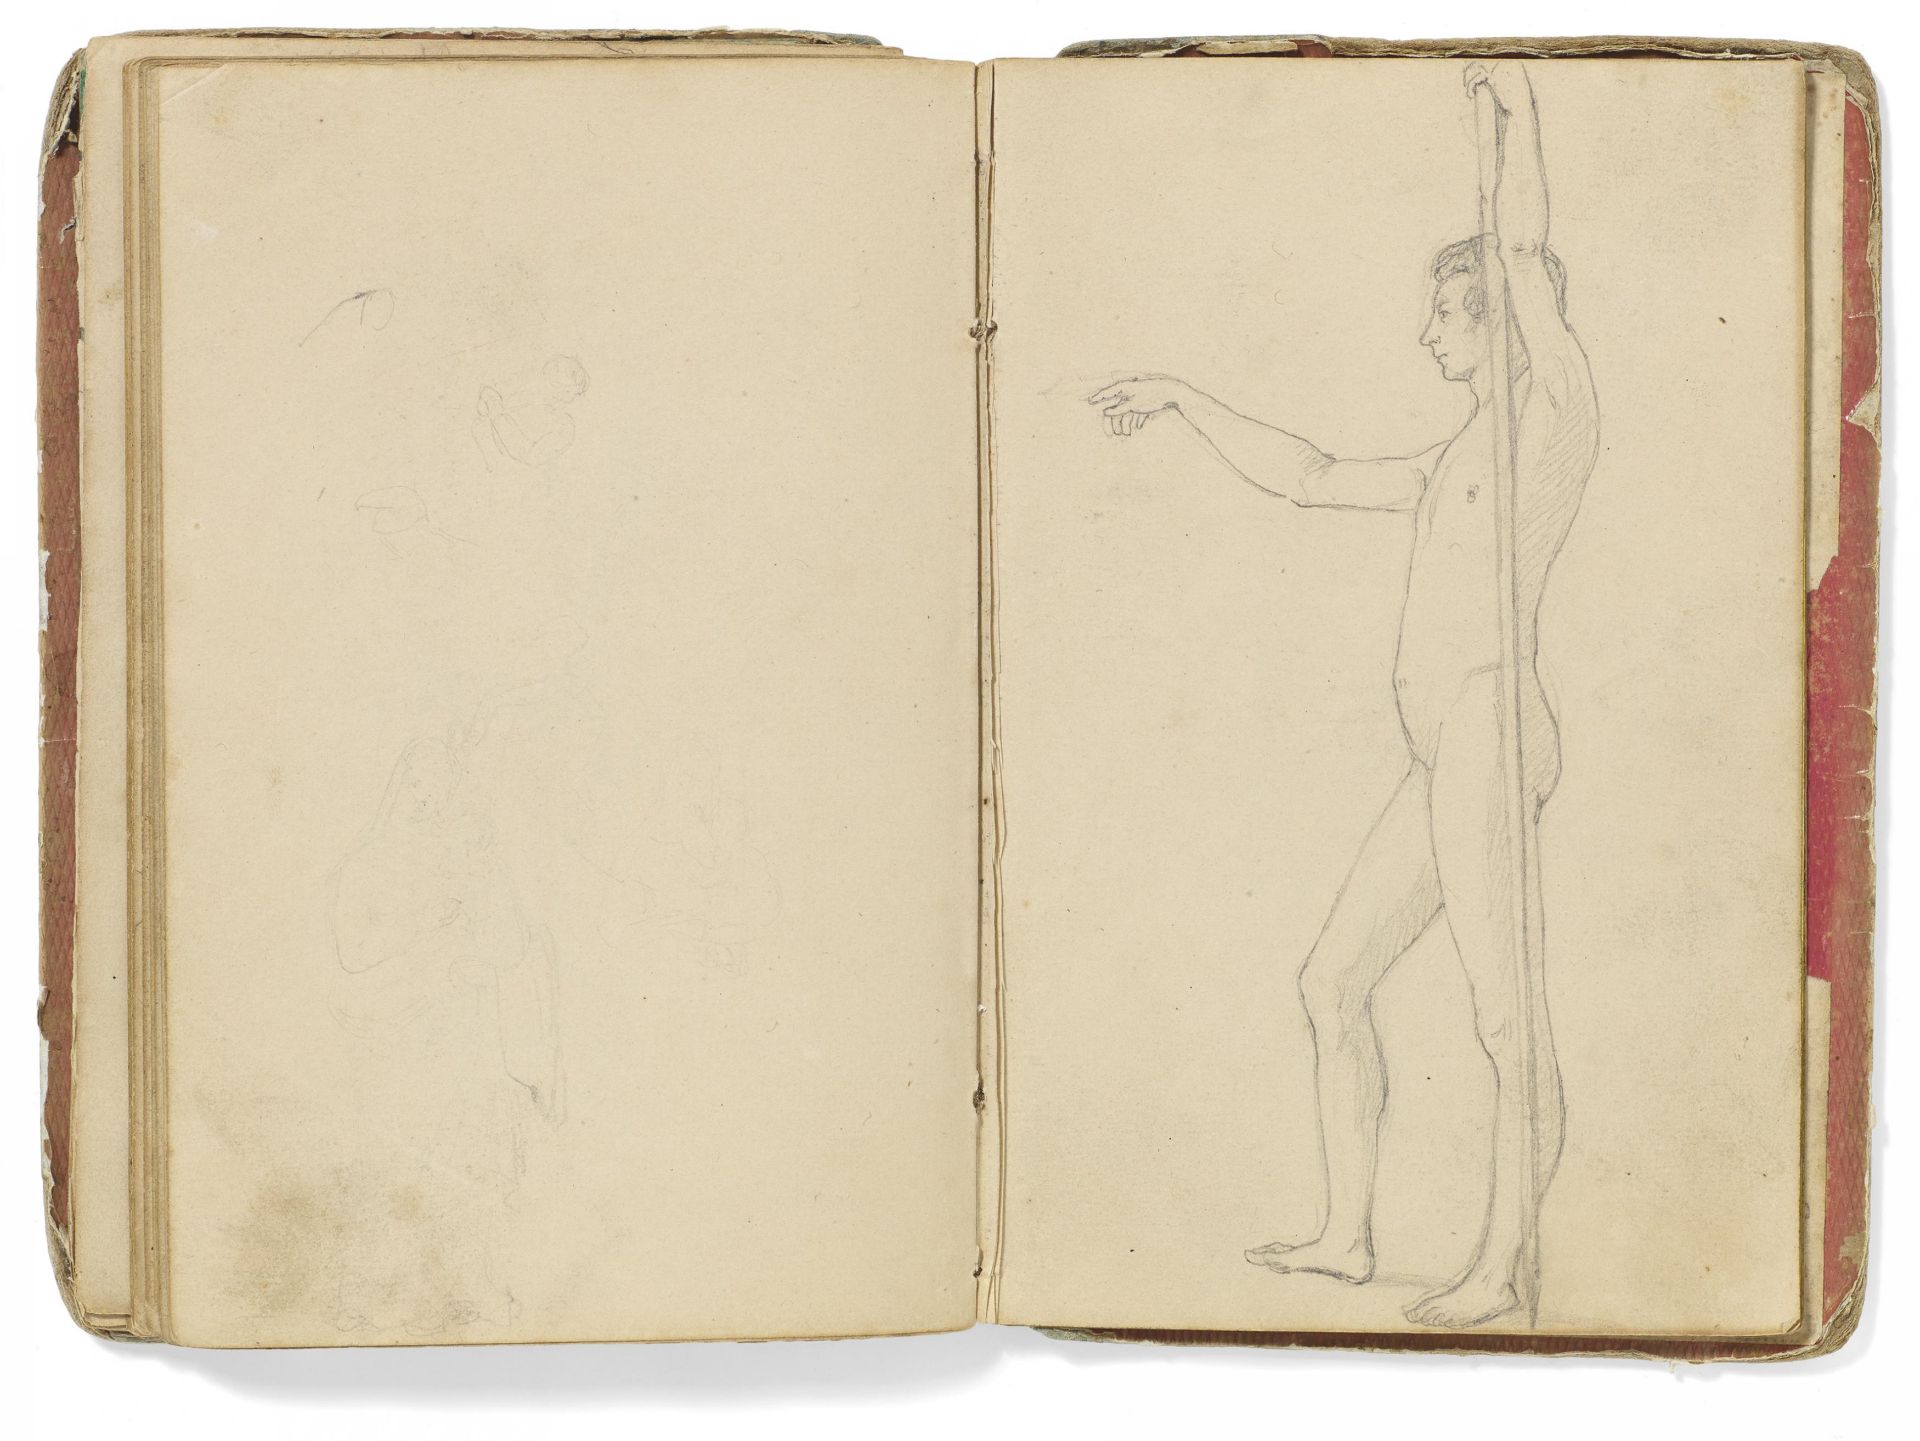 Kaupert, GustavKassel 1819 - 1897 Skizzenbuch, ca. 40 Seiten. Figuren, Tiere und Skelette. Bleistift - Bild 5 aus 6